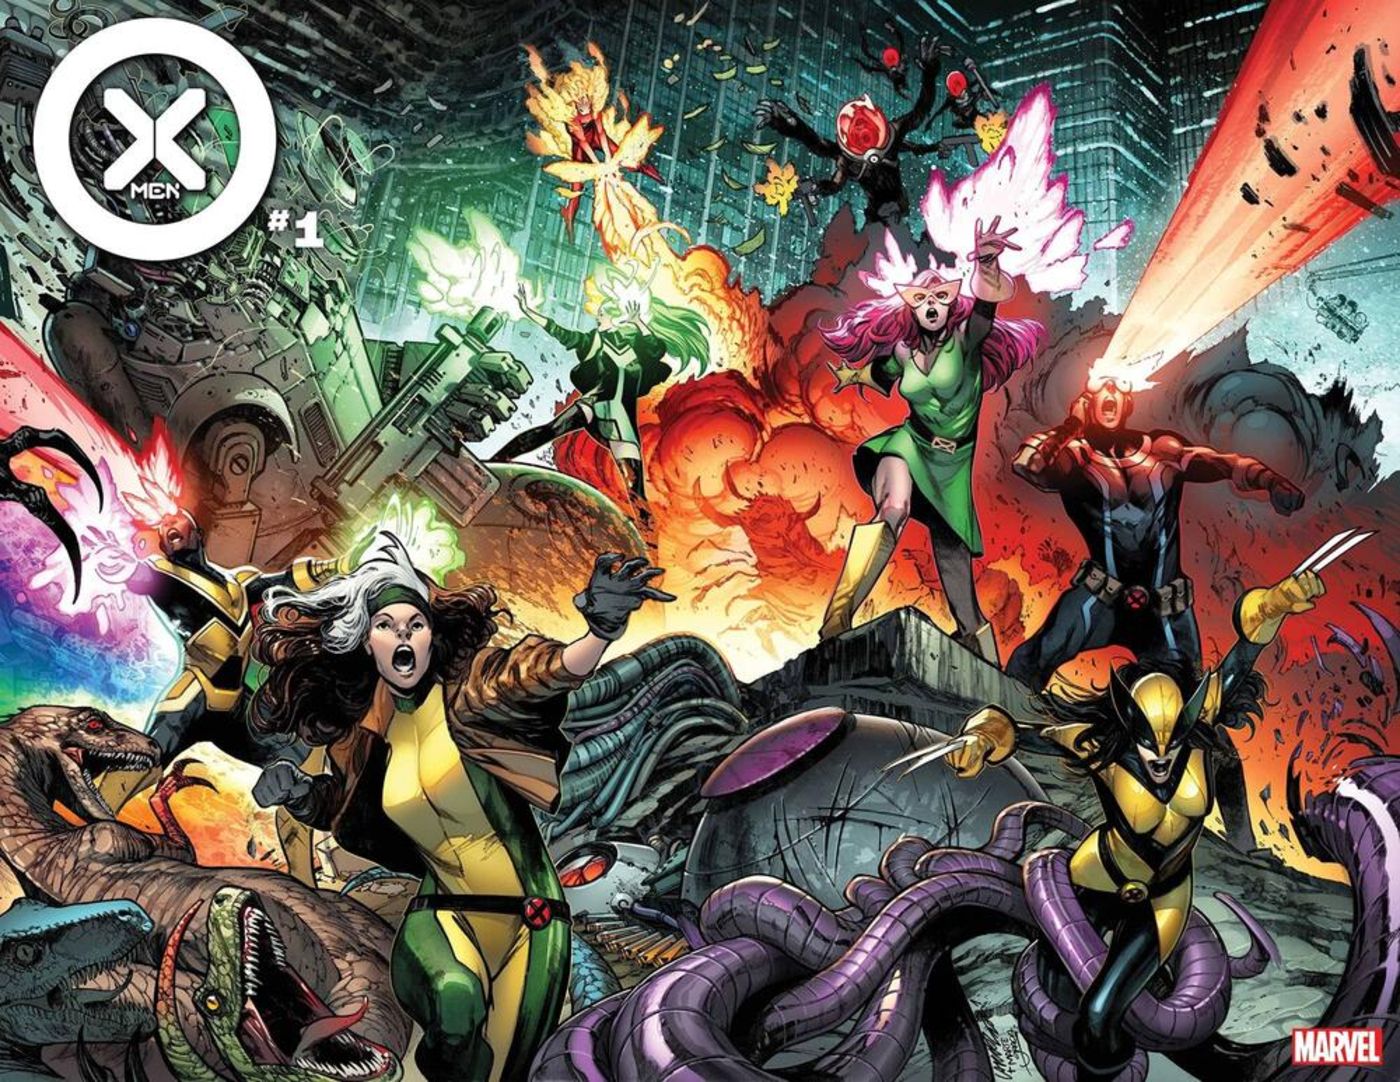 Every Member of New X-Men Team’s Full Roster Announced By Marvel